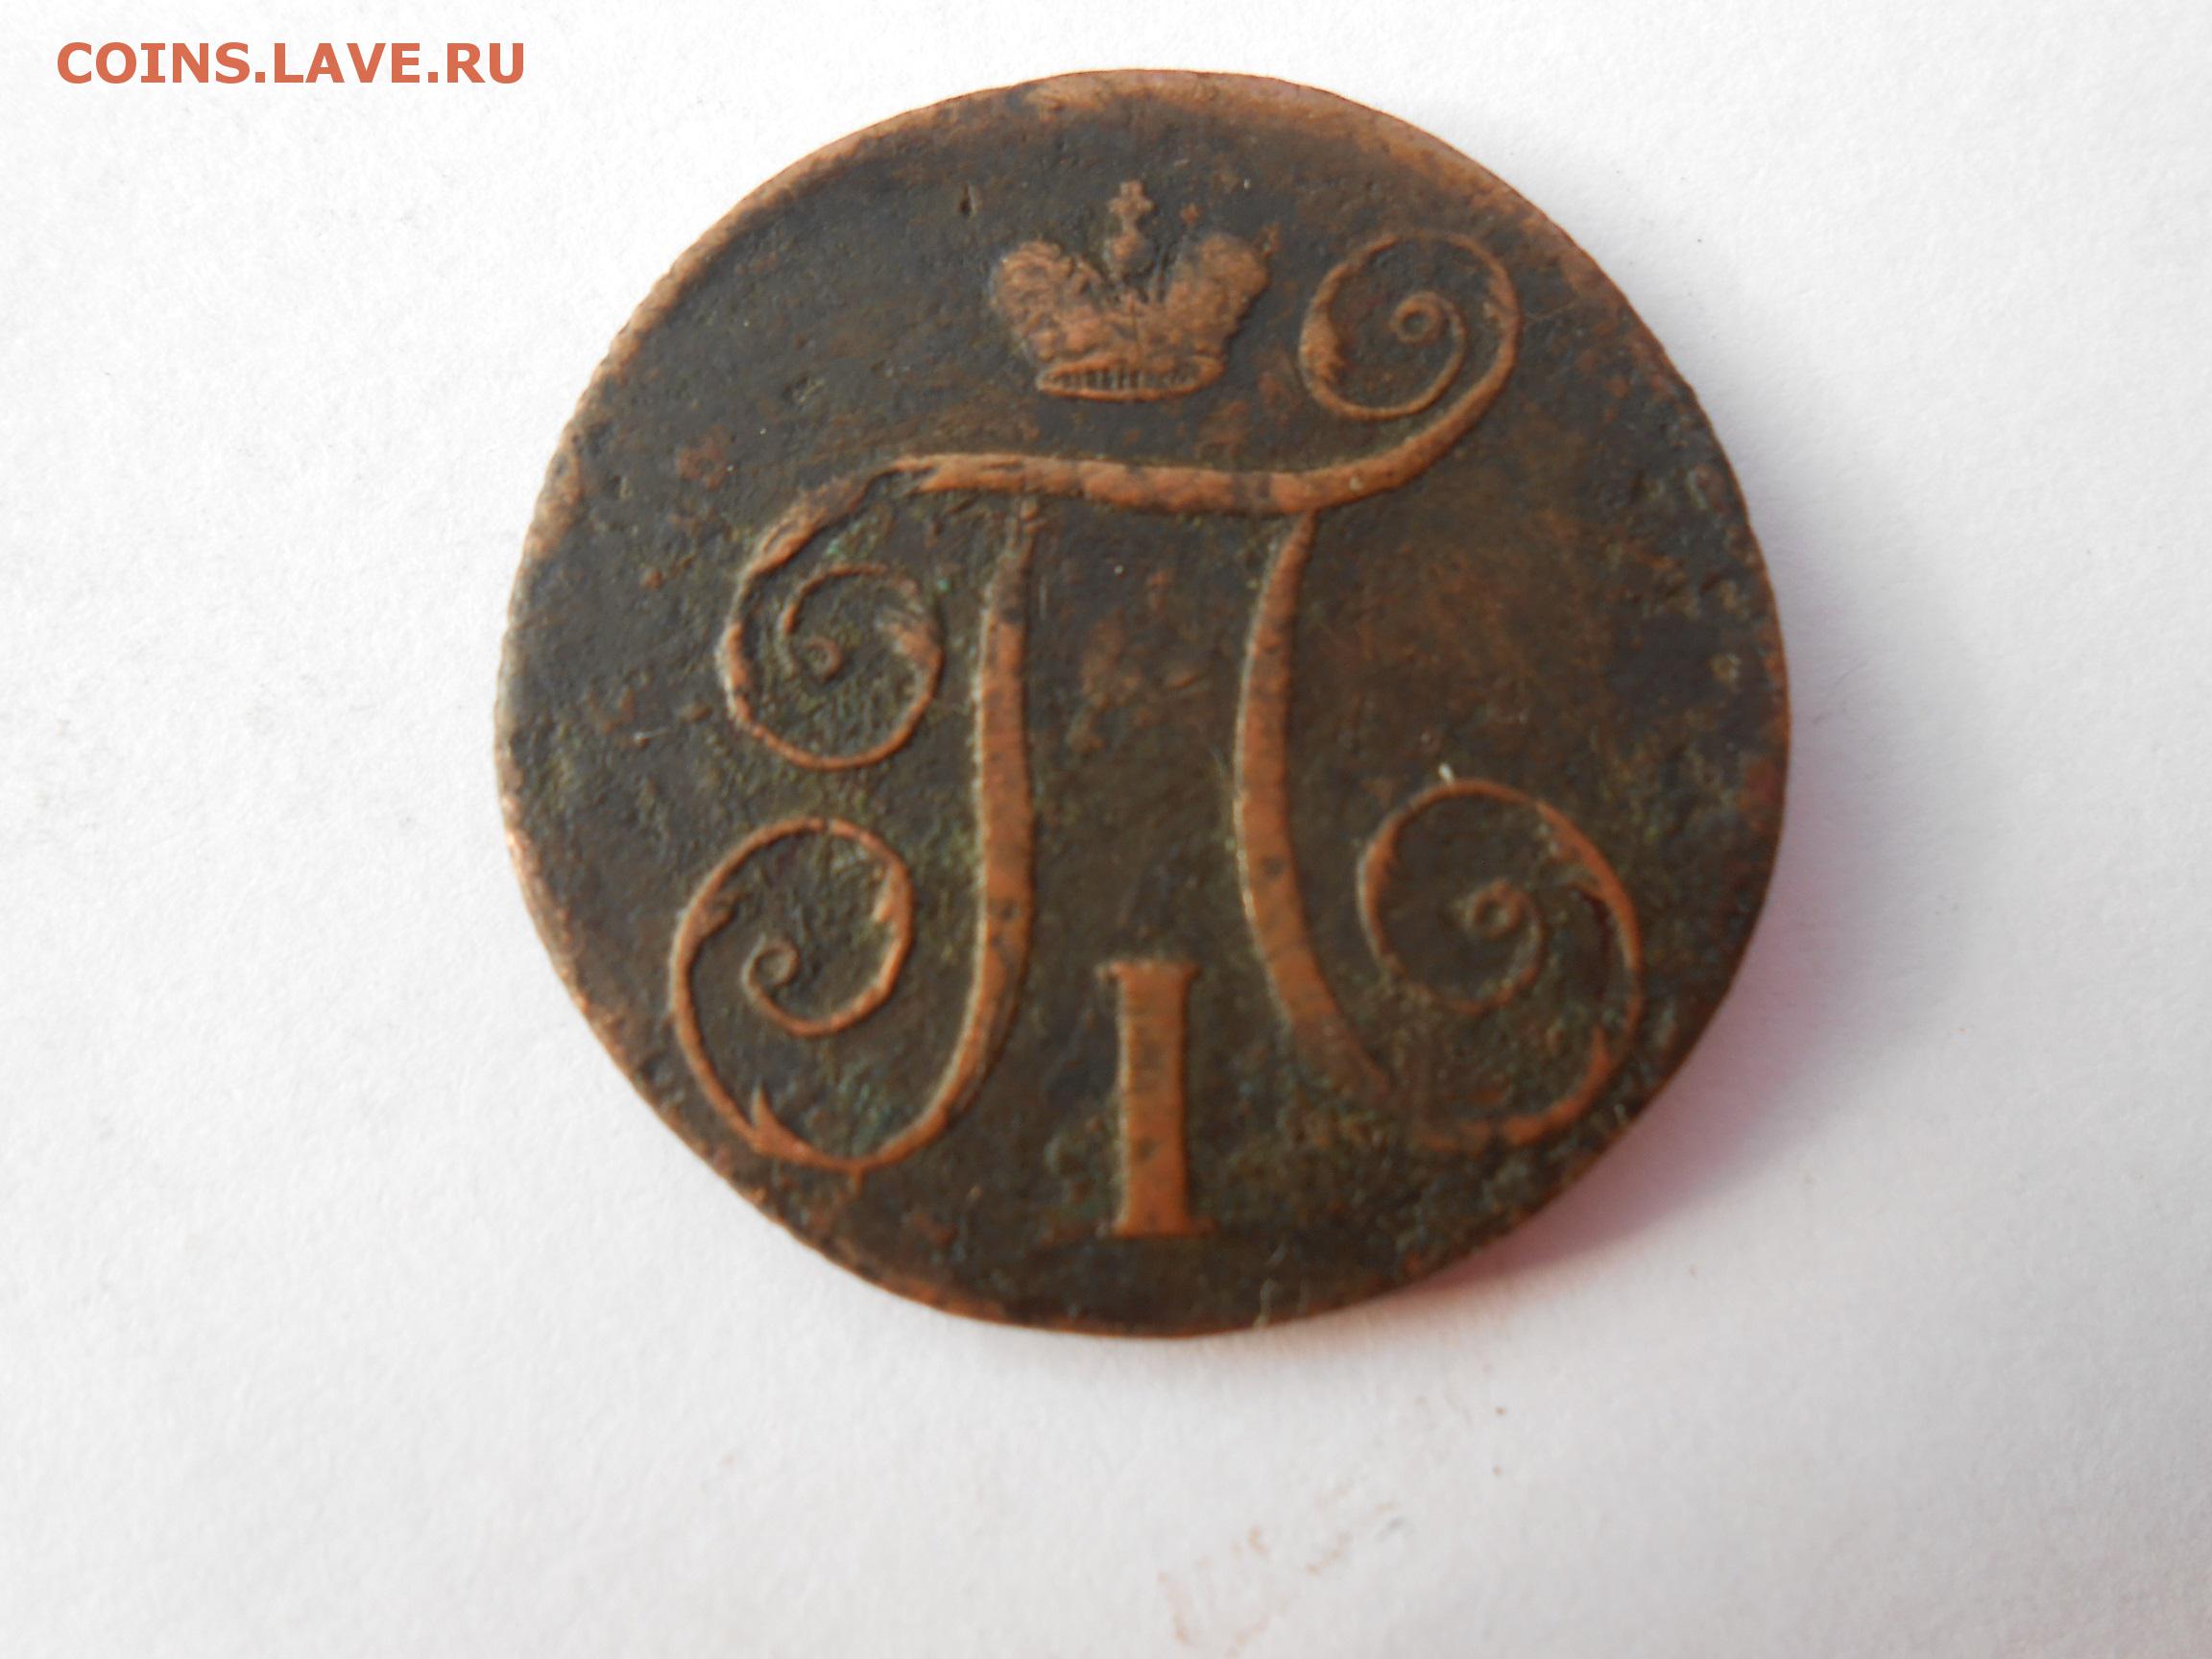 Царские монеты 1700. Монеты 1700-1800. Монеты 1700-1800 года. Монеты 1700-1800 года с двумя VV. Монеты Восточной Пруссии 1700-1800 годов.